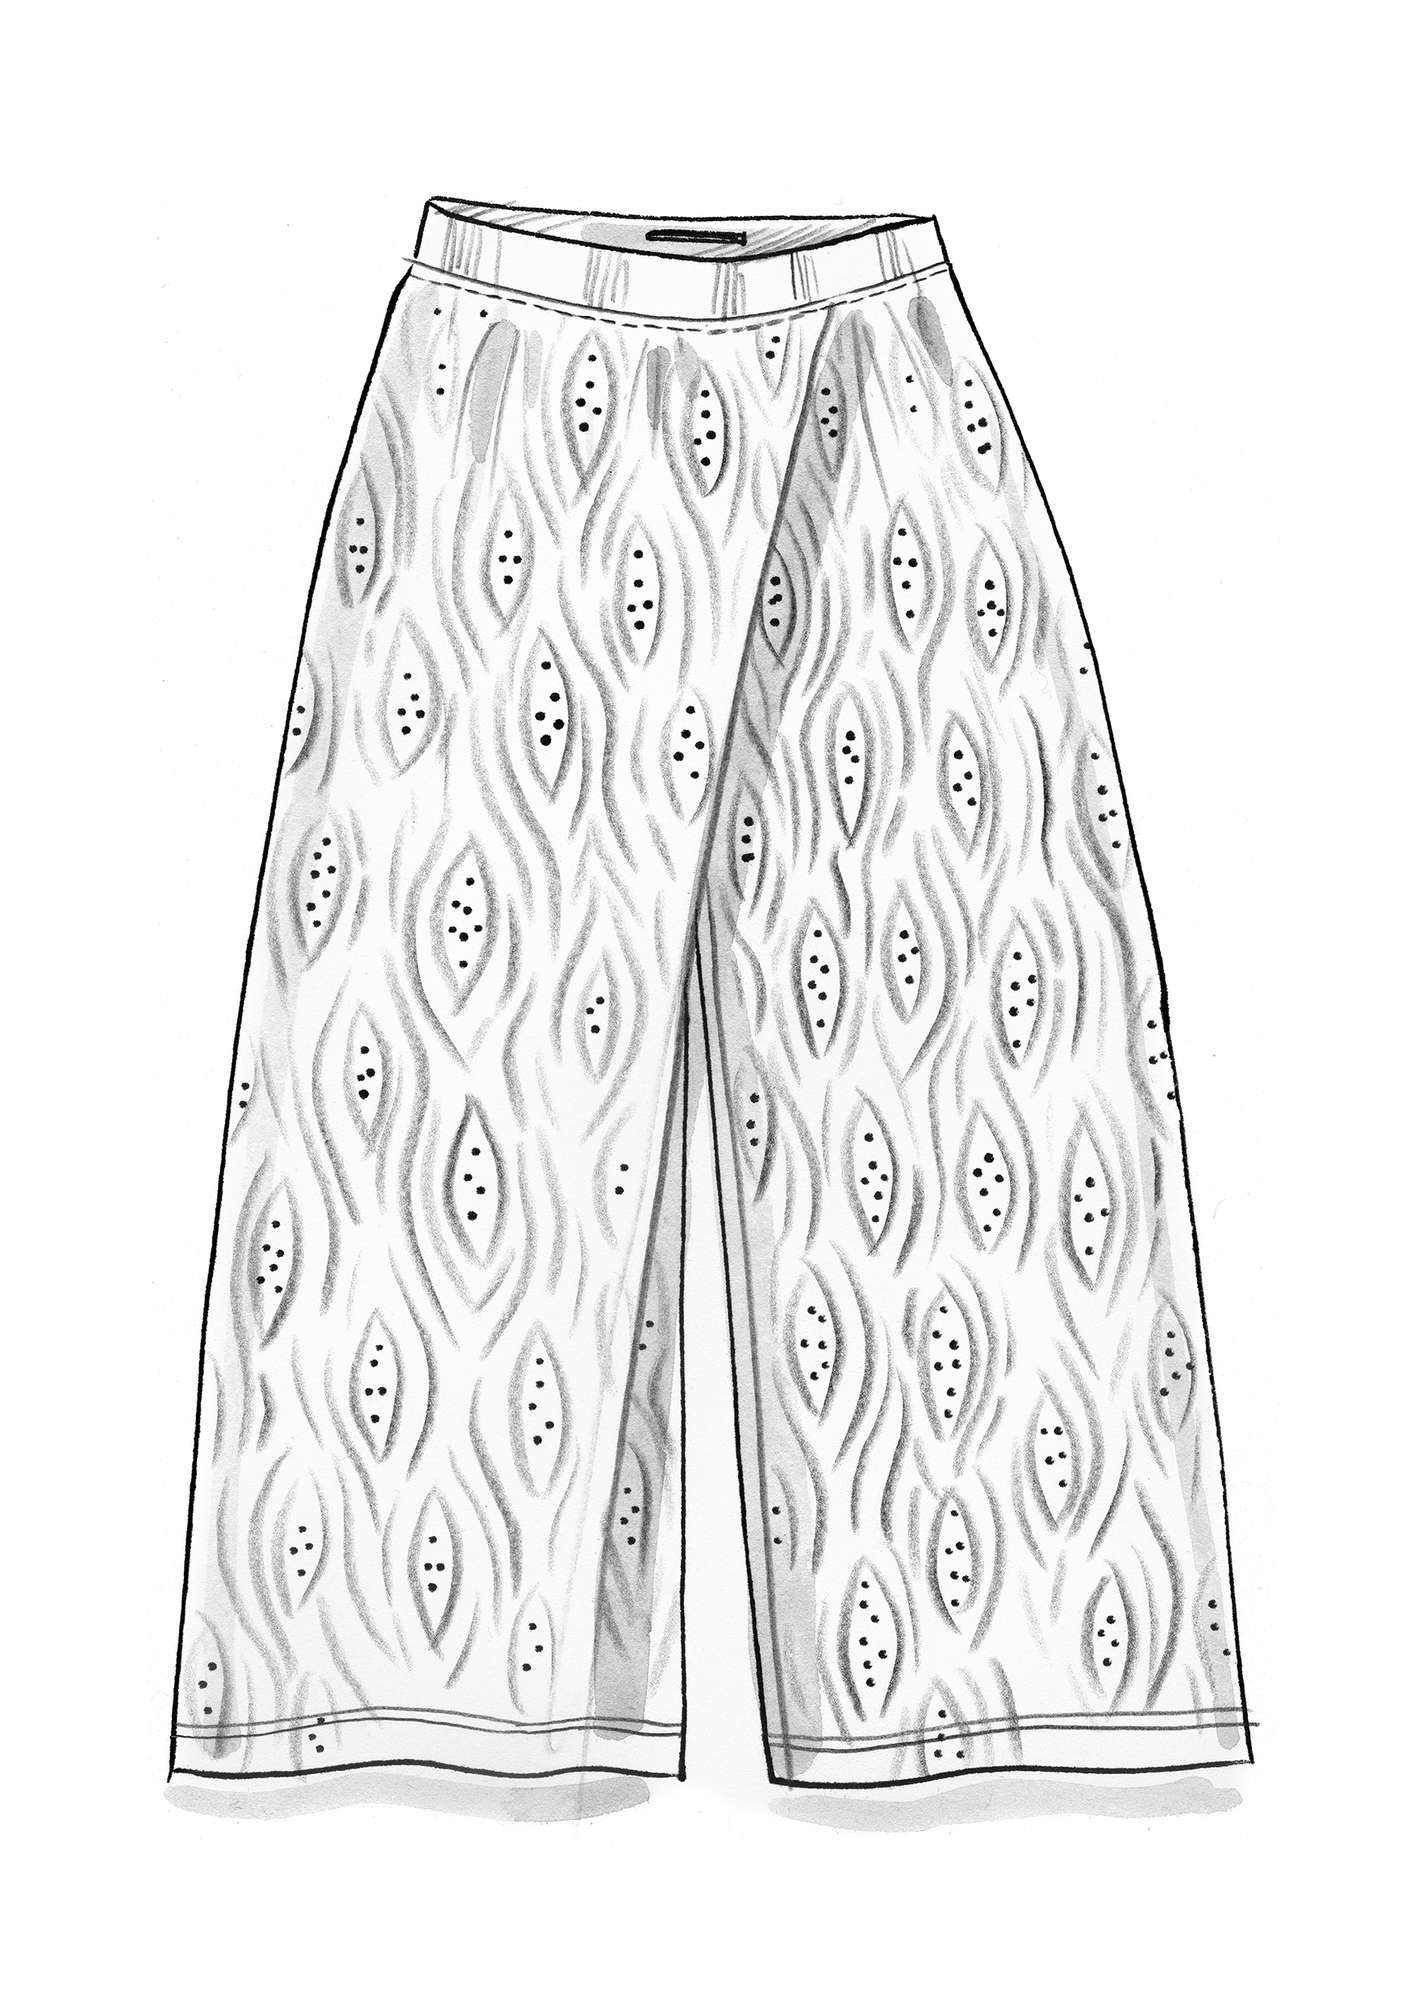 Pantalon  Zebra  en jersey de coton biologique/modal/élasthanne coquillage